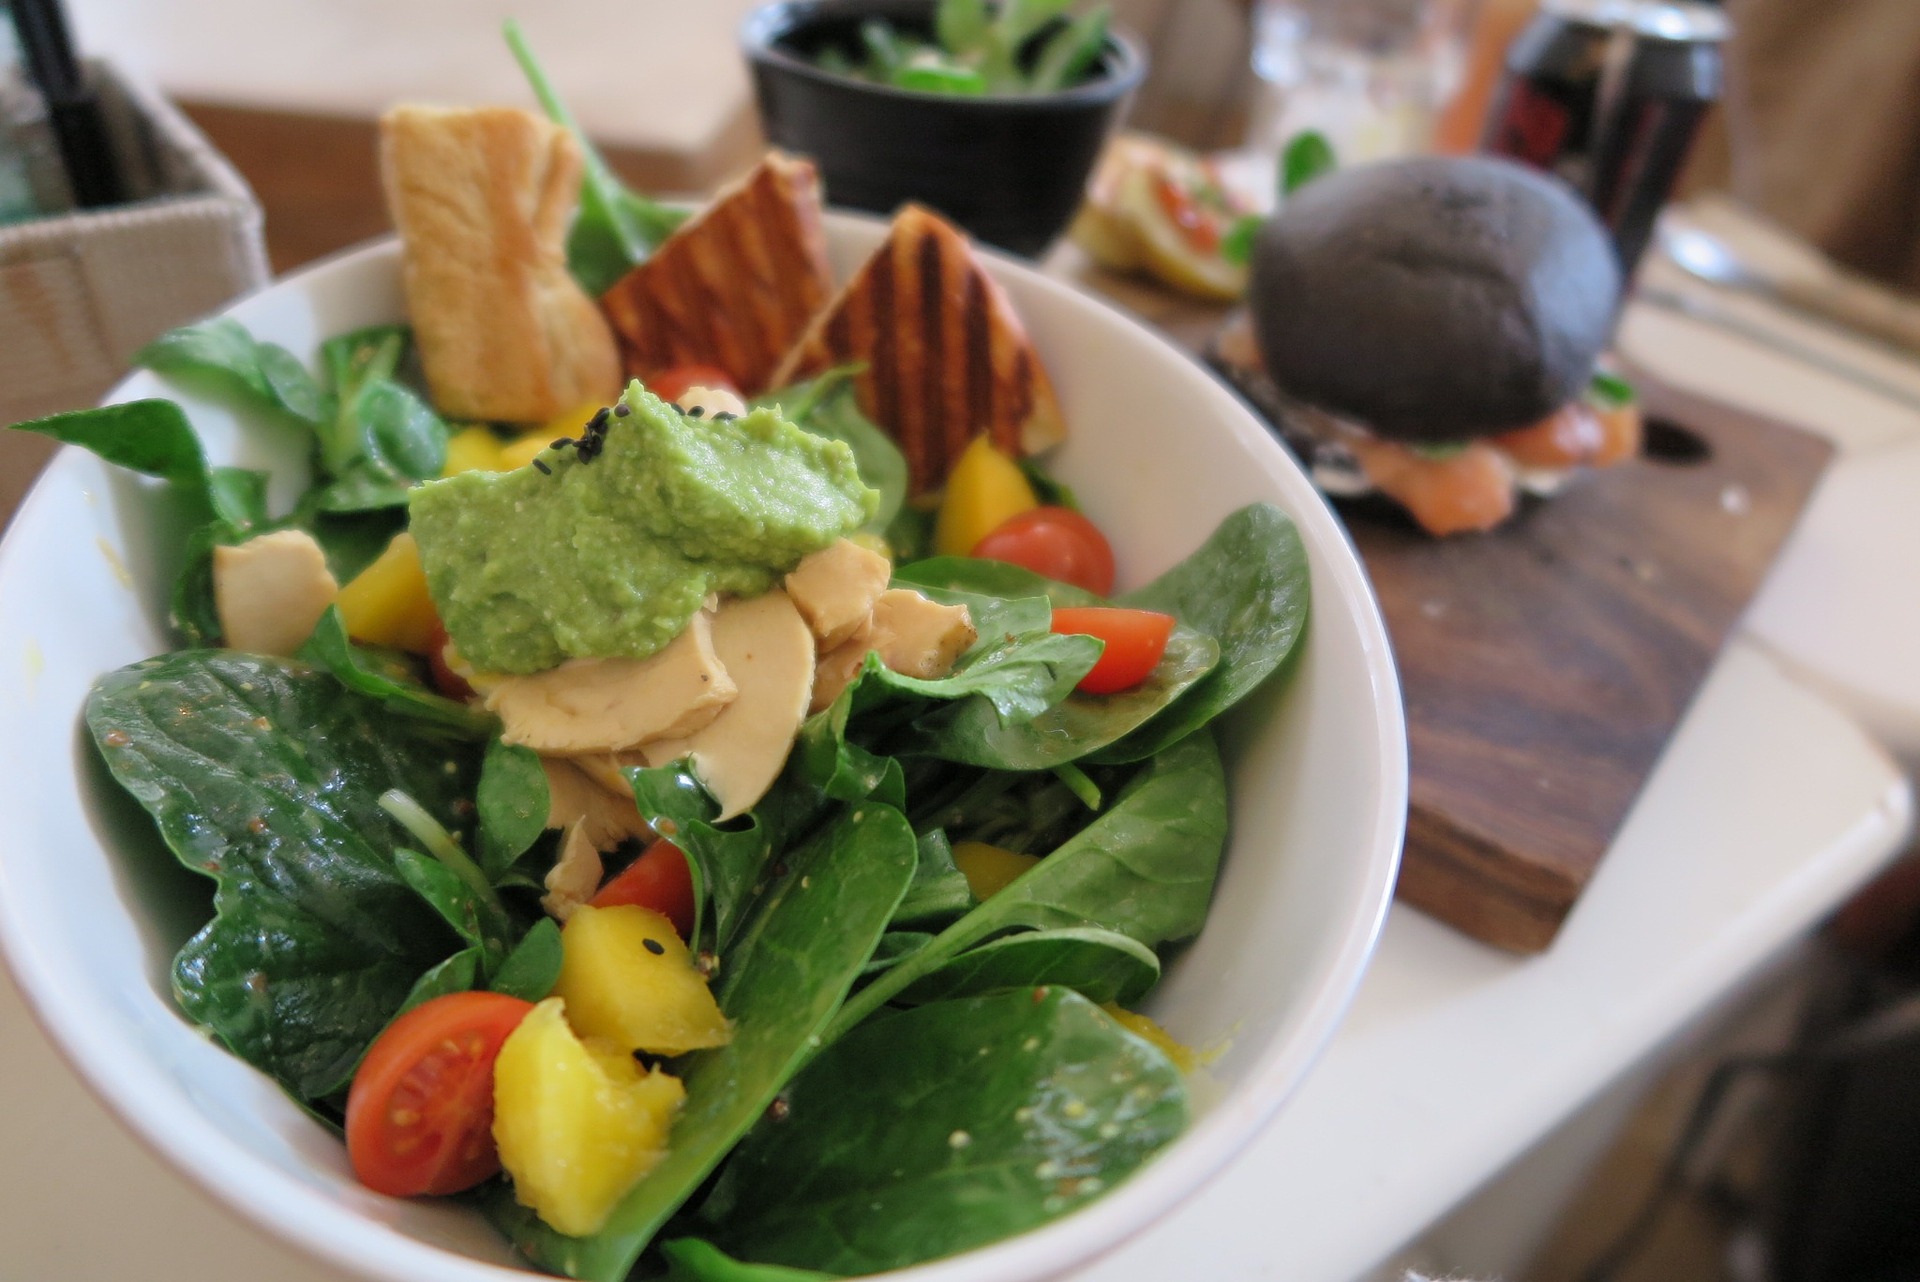 Algunos alimentos que ayudan al metabolismo son ideales para incluirlos en la cena. (Foto Prensa Libre: Pixabay)